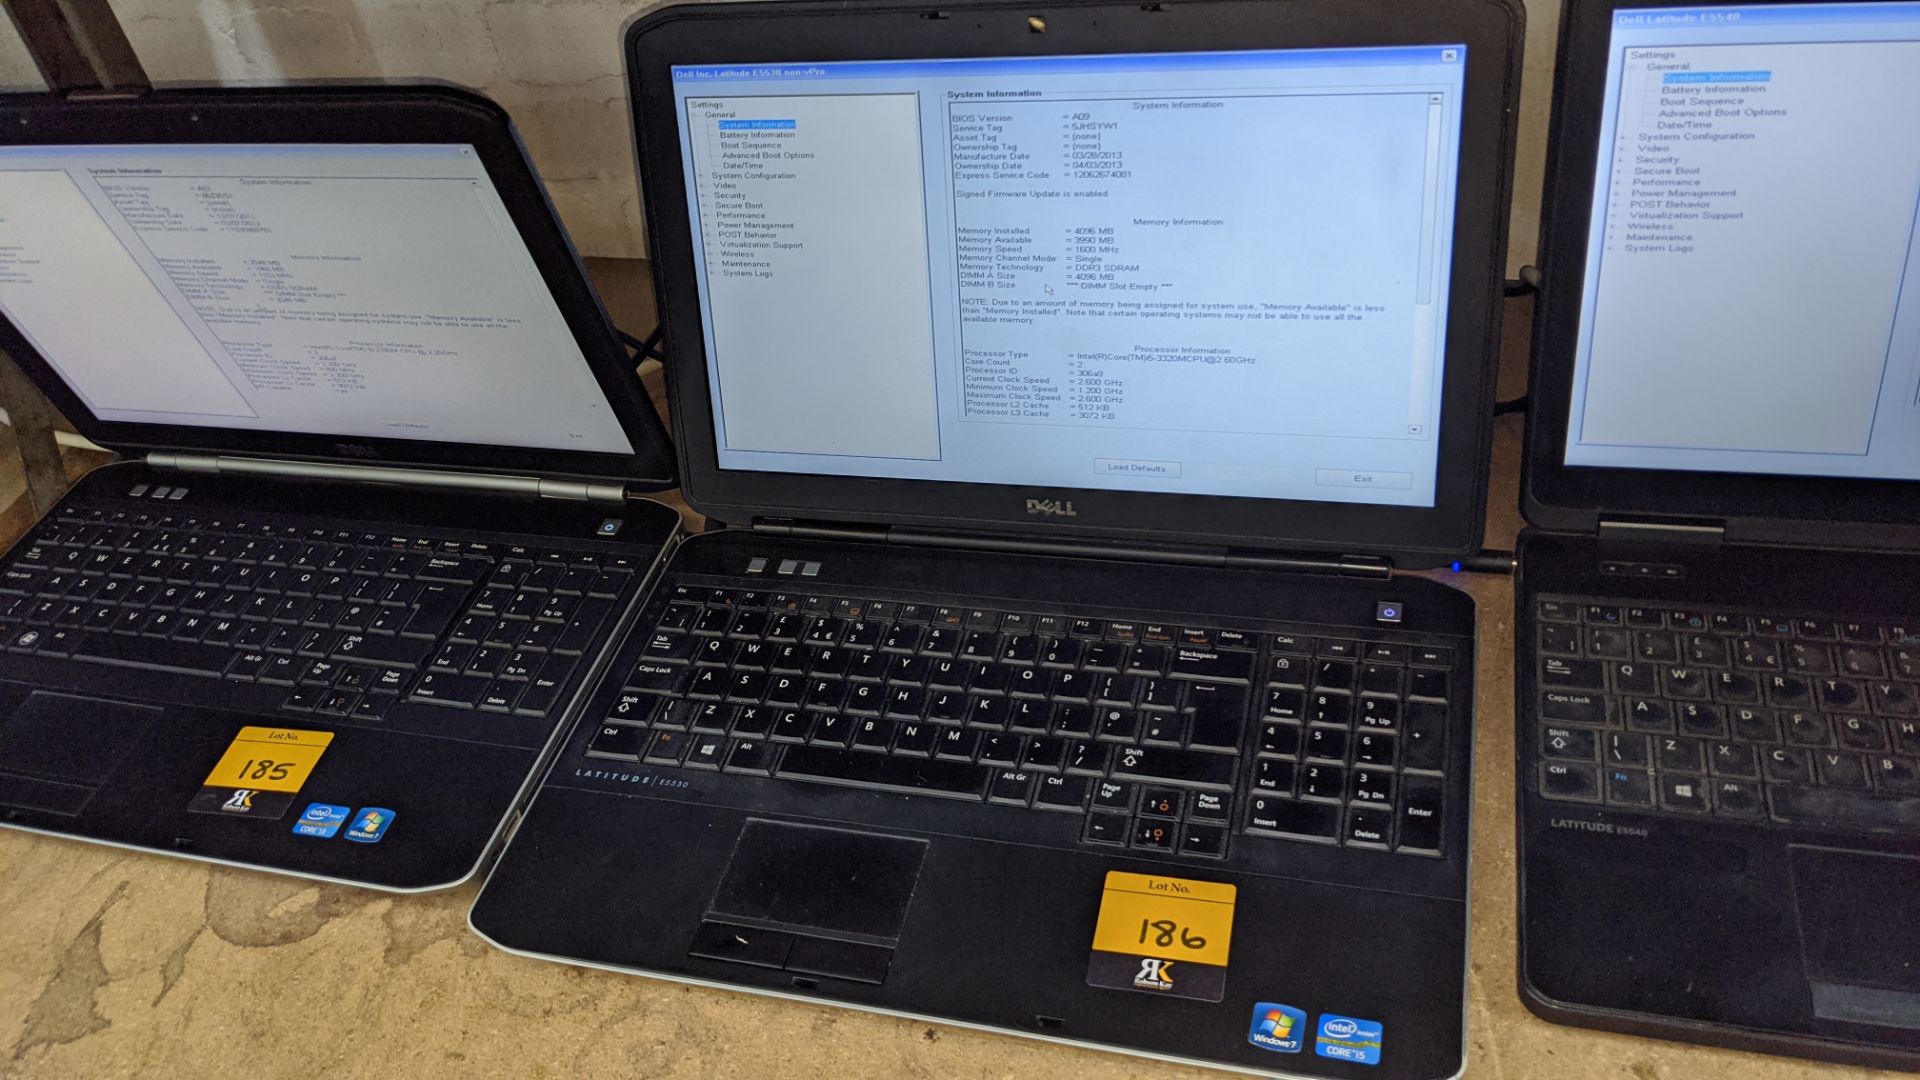 Dell Latitude E5530 notebook computer with Intel Core i5-3320 processor, 4Gb RAM, 500Gb hard drive, - Image 3 of 7